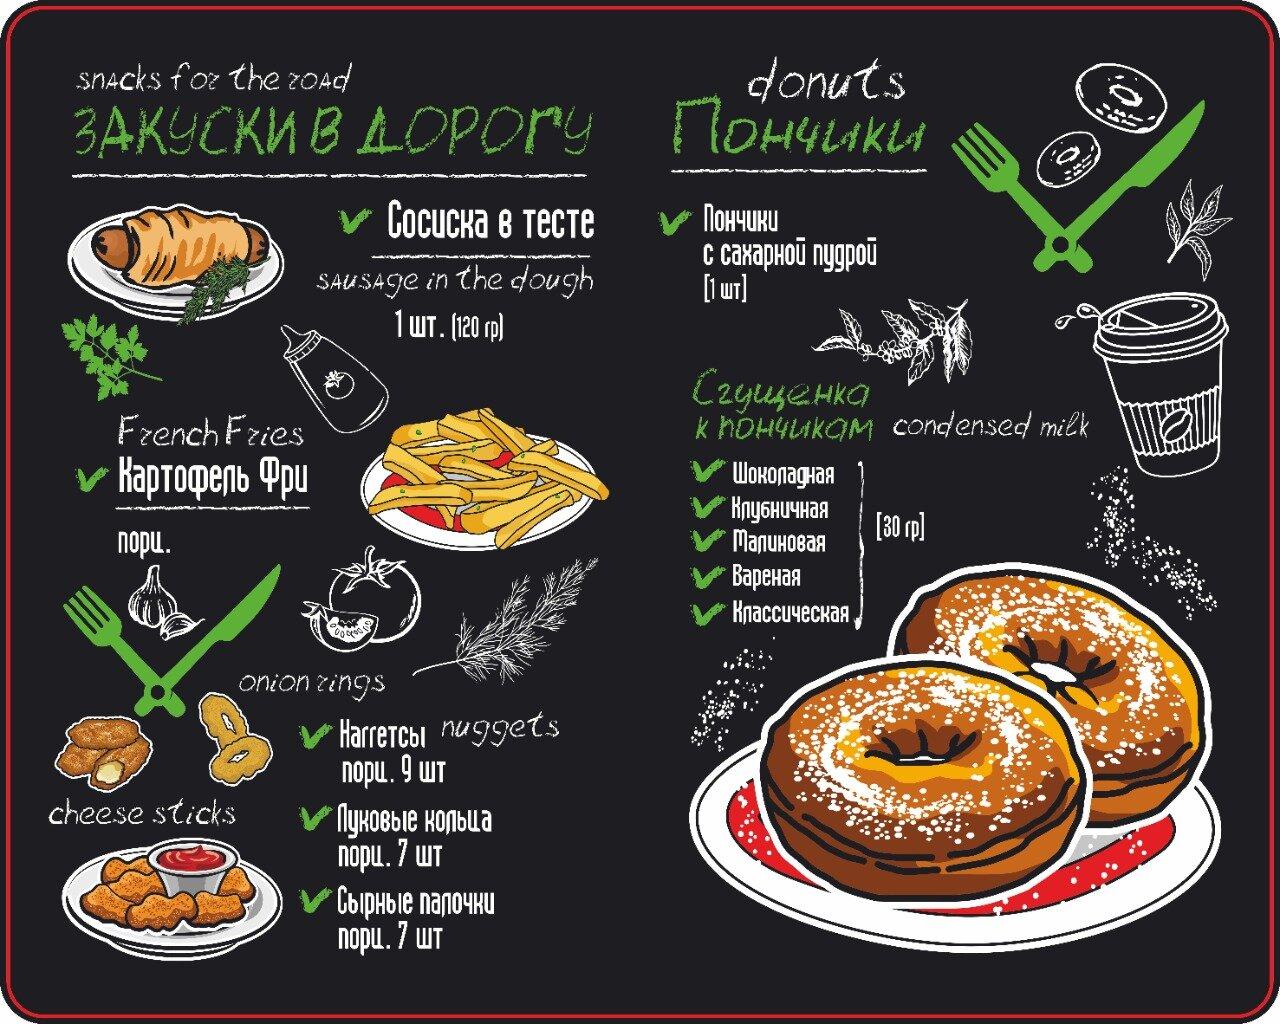 Munster donuts menu